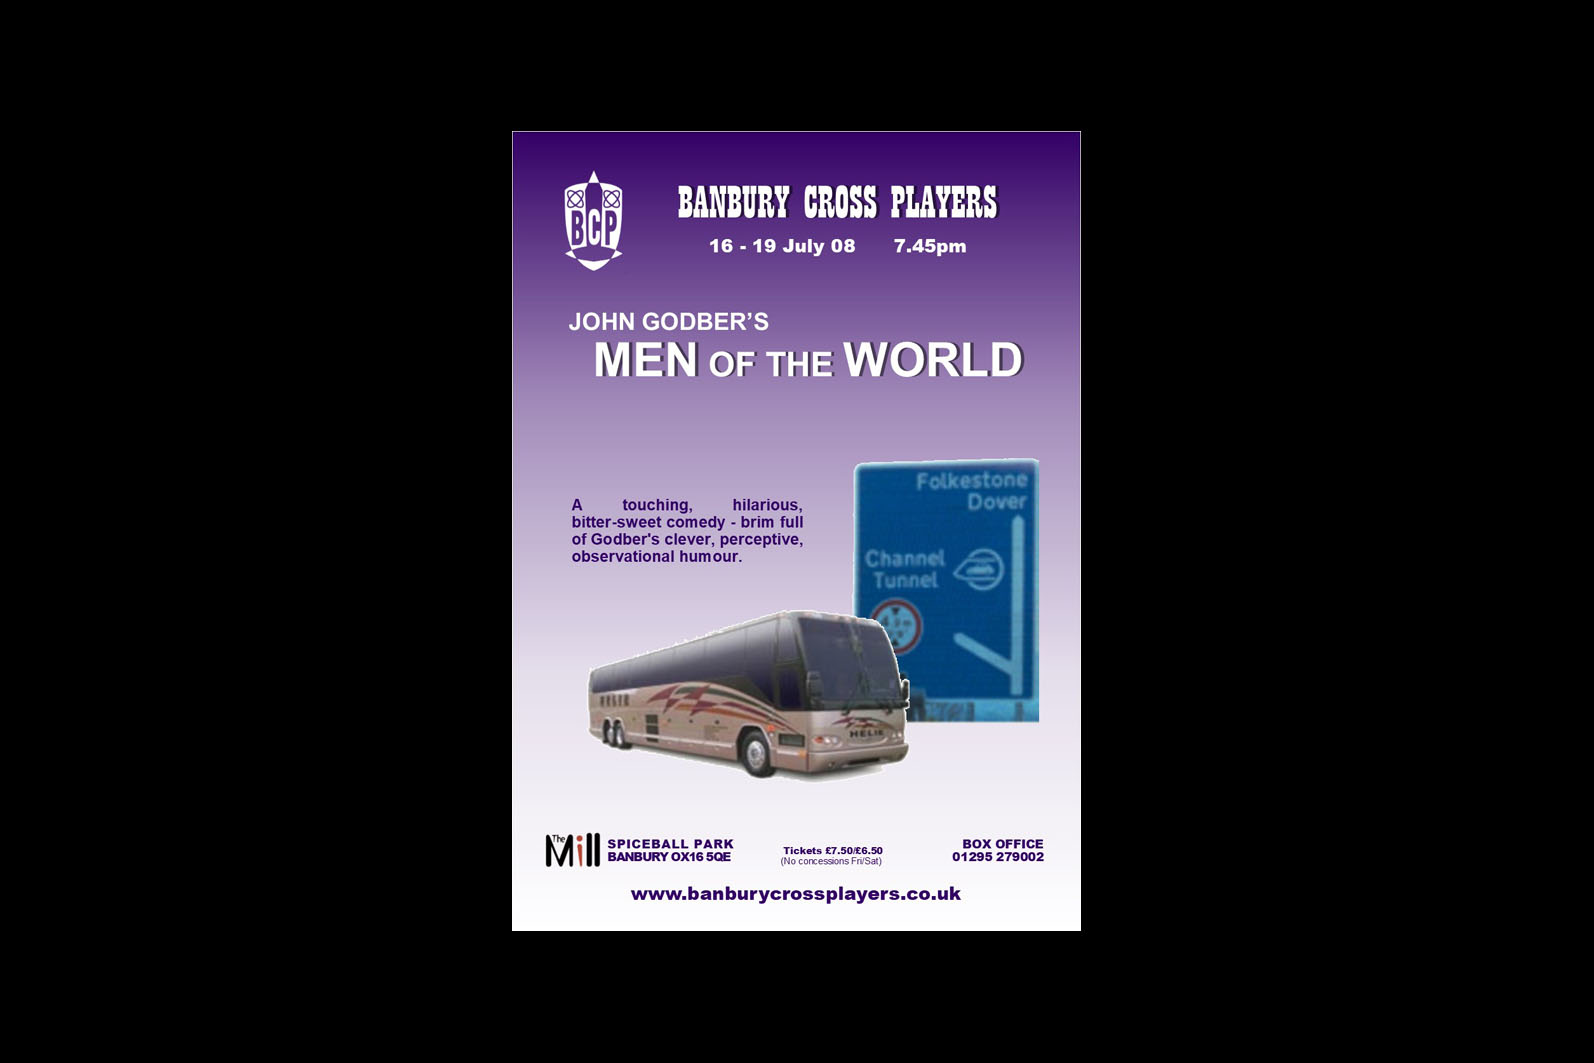 Men of the World by John Godber